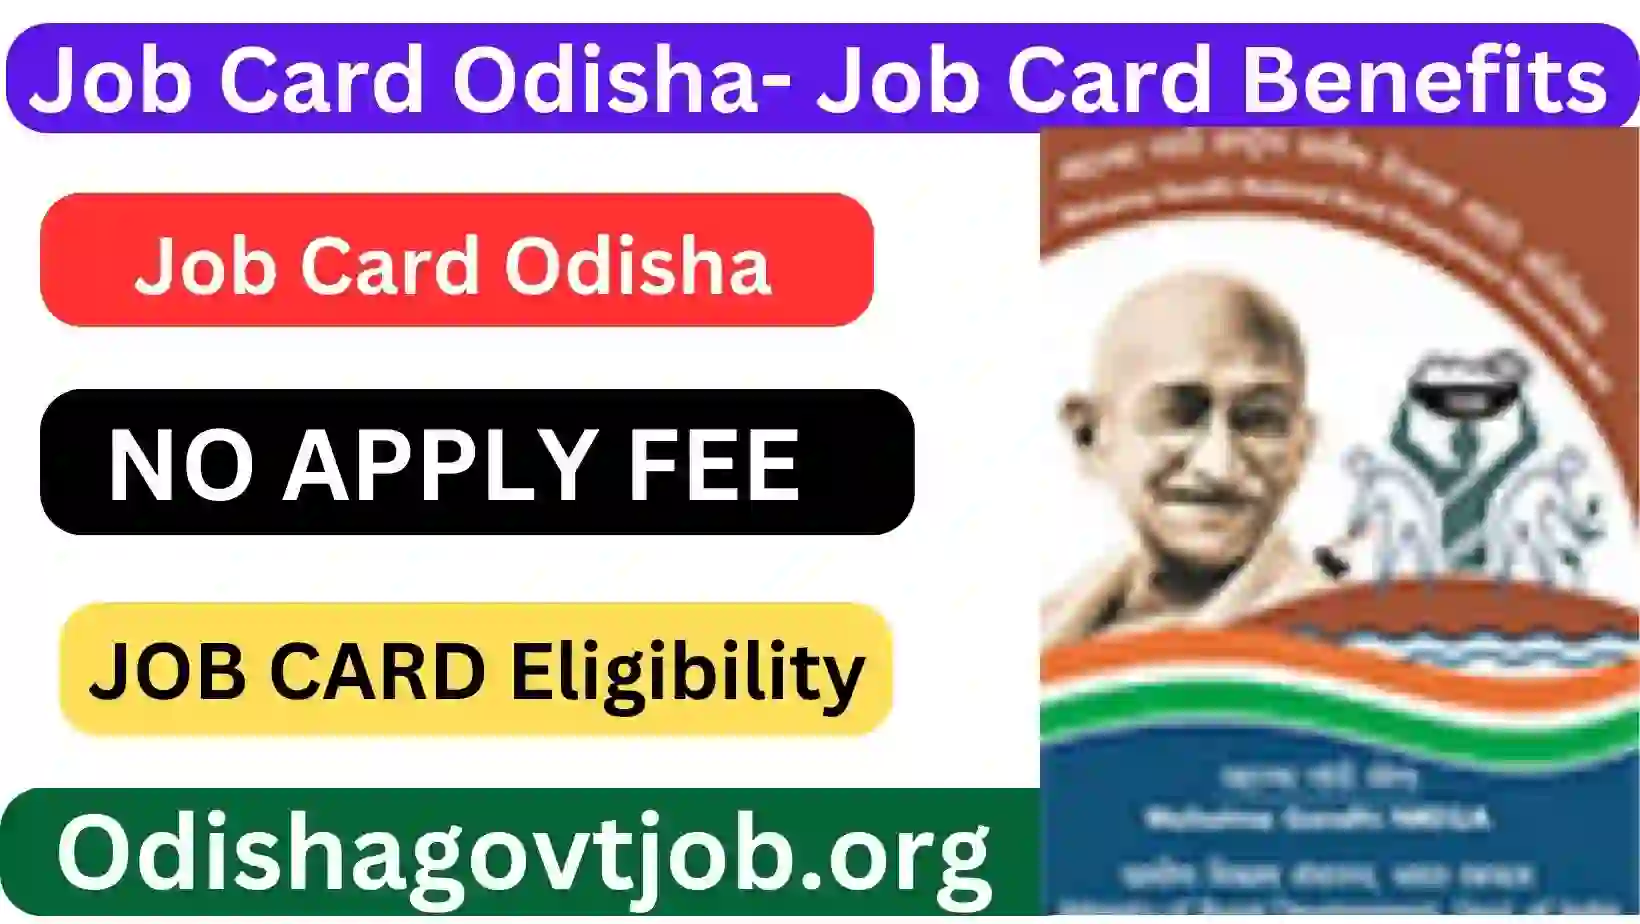 Job Card Odisha